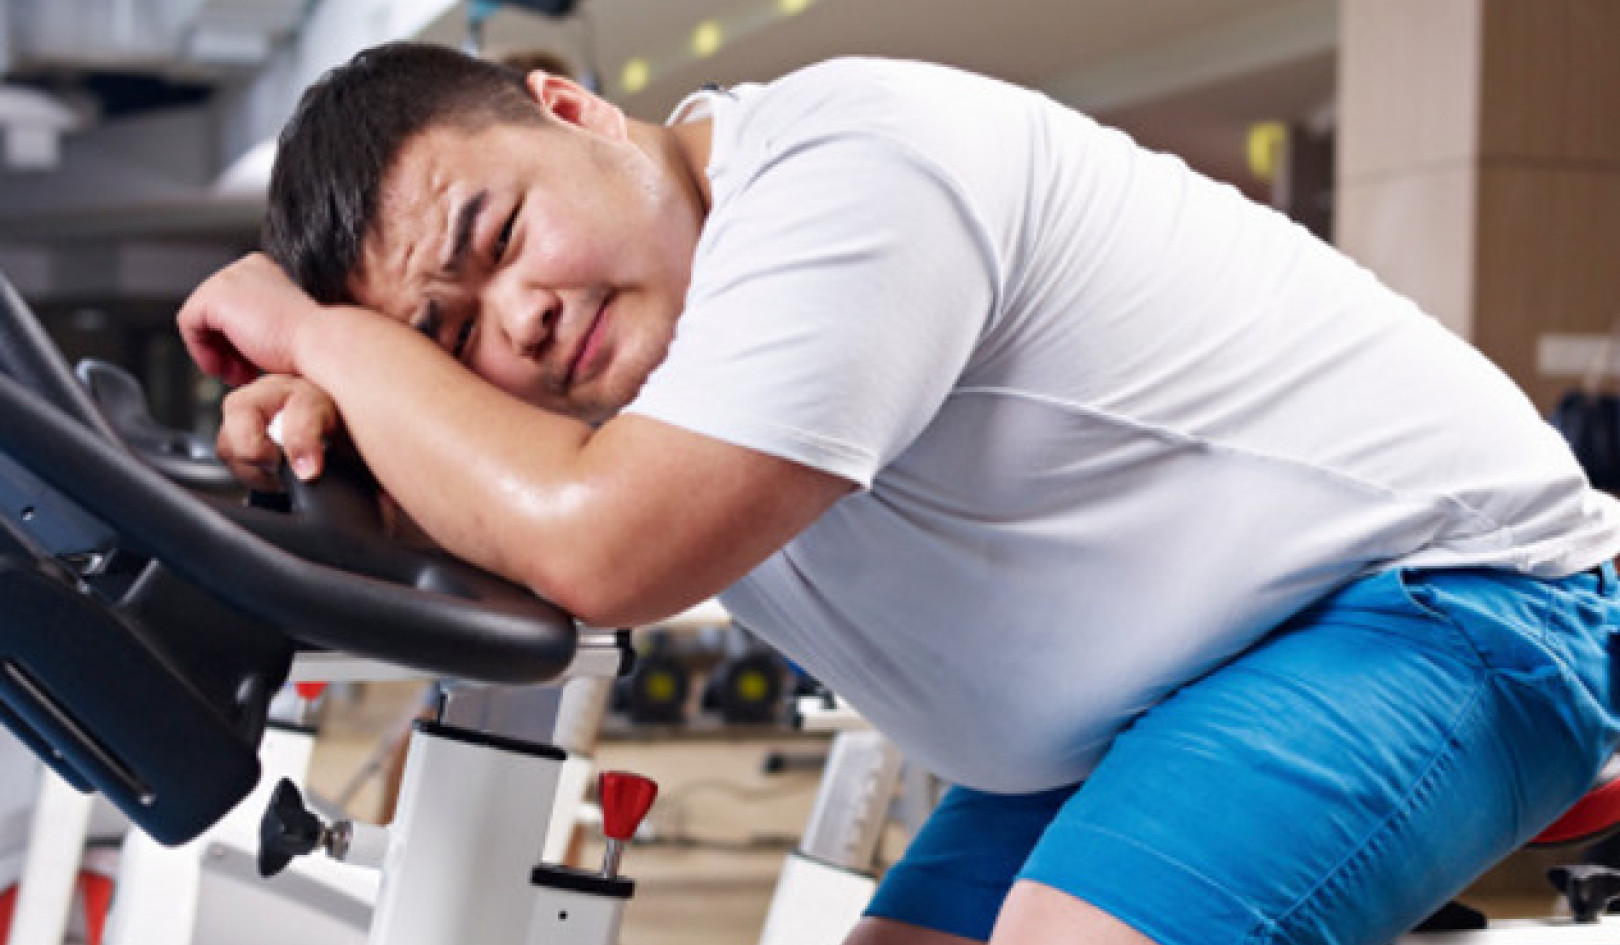 Dezbaterea exercițiului și scăderii în greutate: dovezi pentru ambele părți